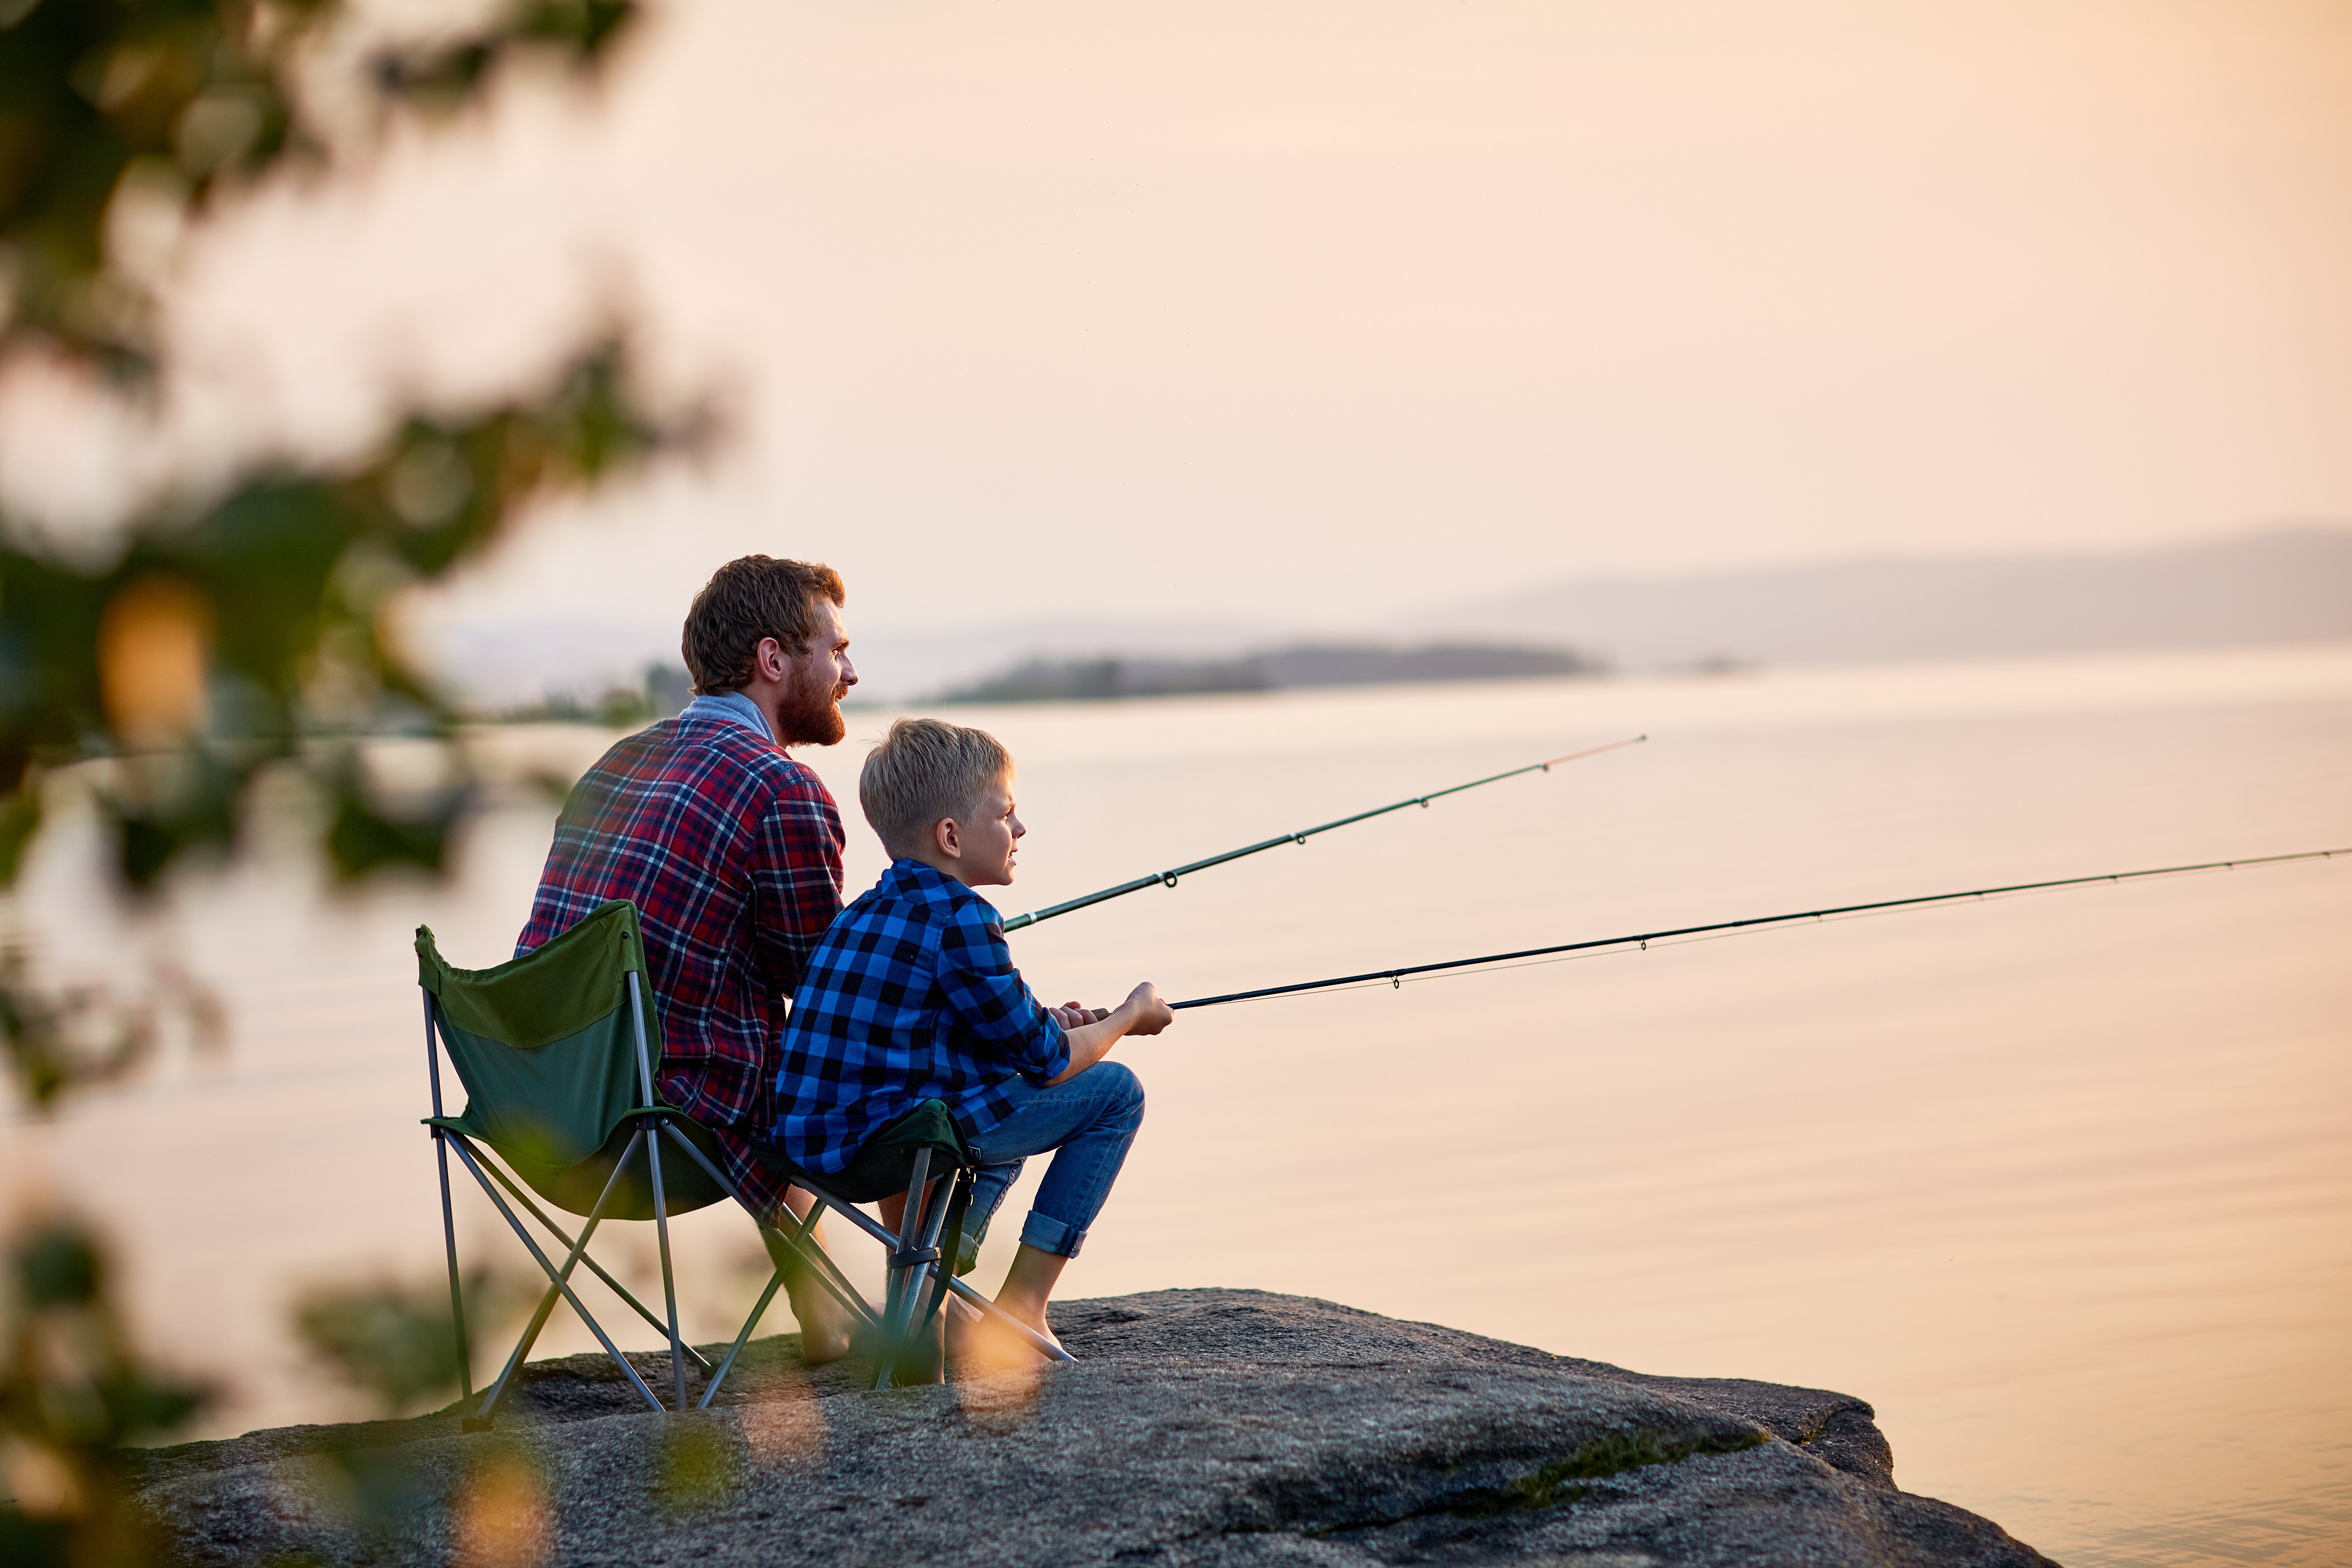 Jordan und sein Vater besuchten Seen und fischten mit seinem Vater | Quelle: Shutterstock